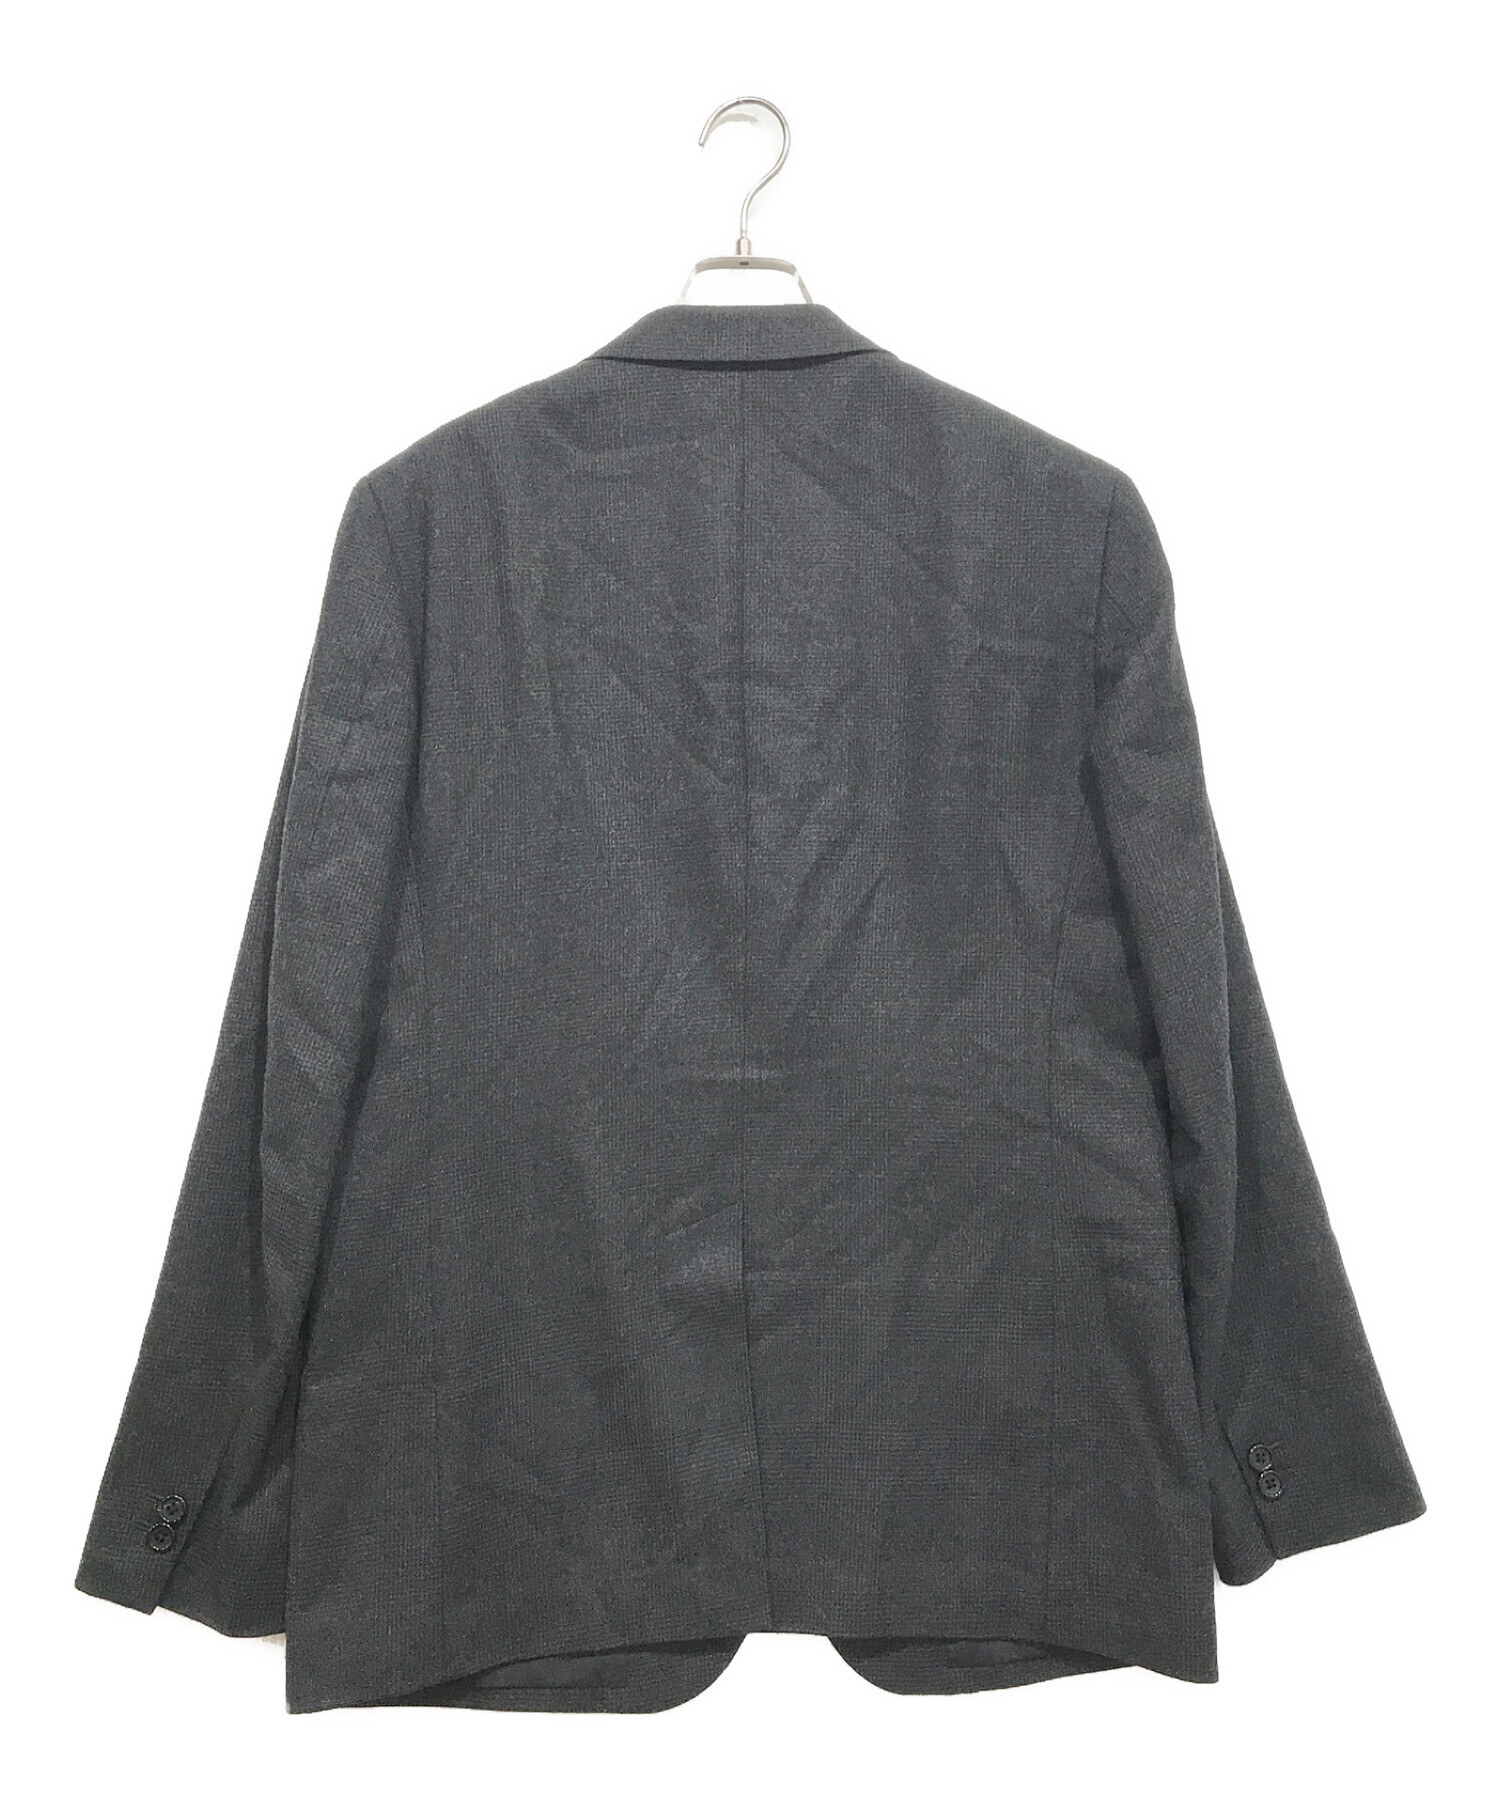 マーガレットハウエル 2Bジャケット袖丈63cm - テーラードジャケット